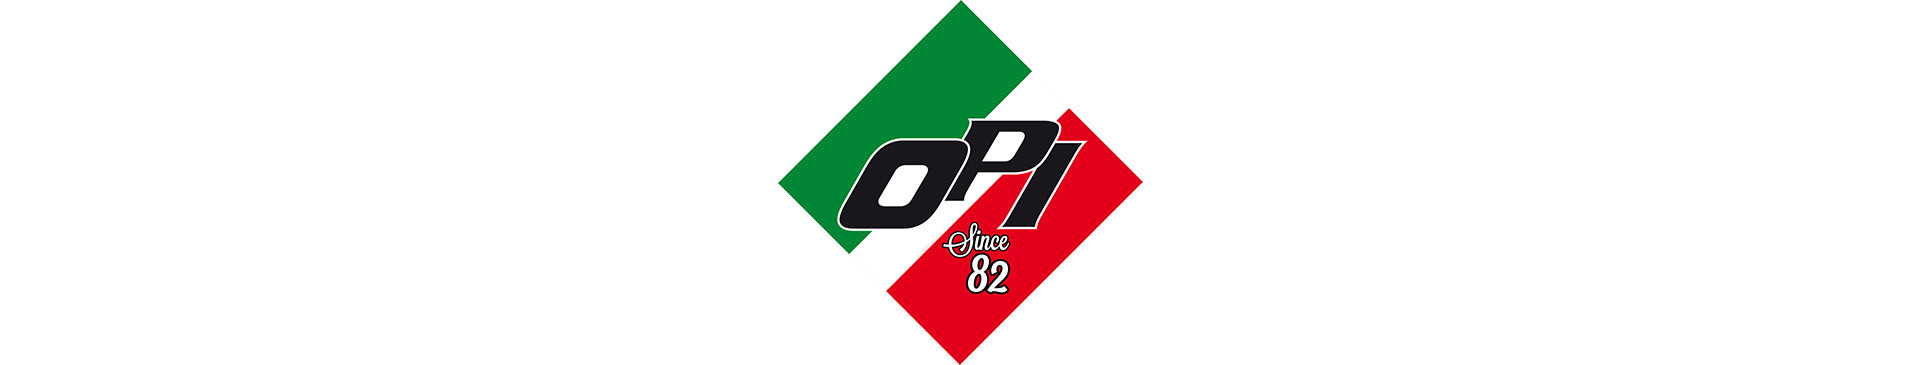 2020_04_sponsor_OPI_logo.jpg